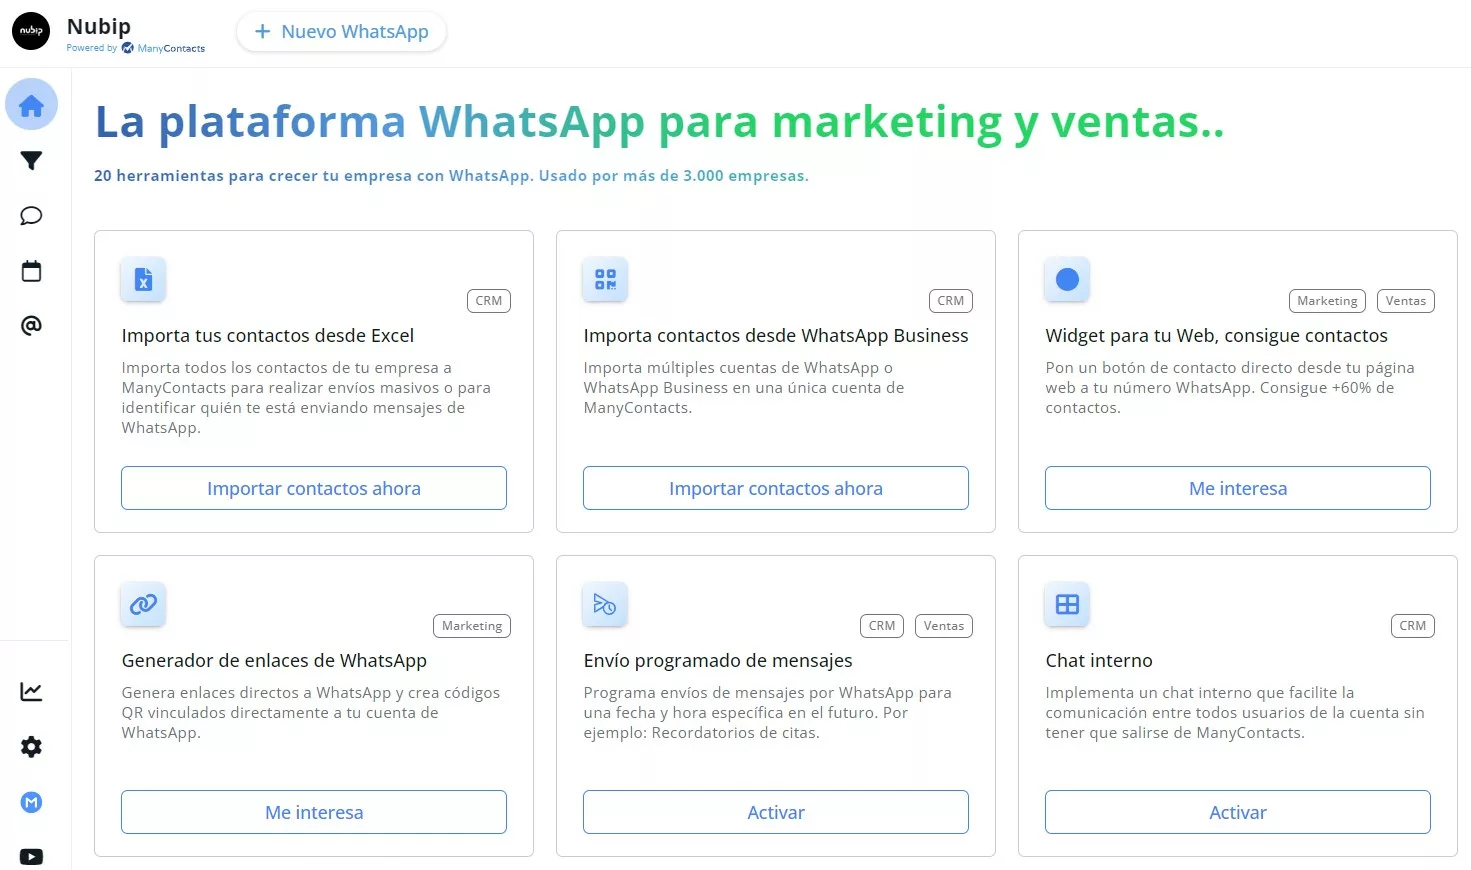 la plataforma de whatsapp para marketing y ventas